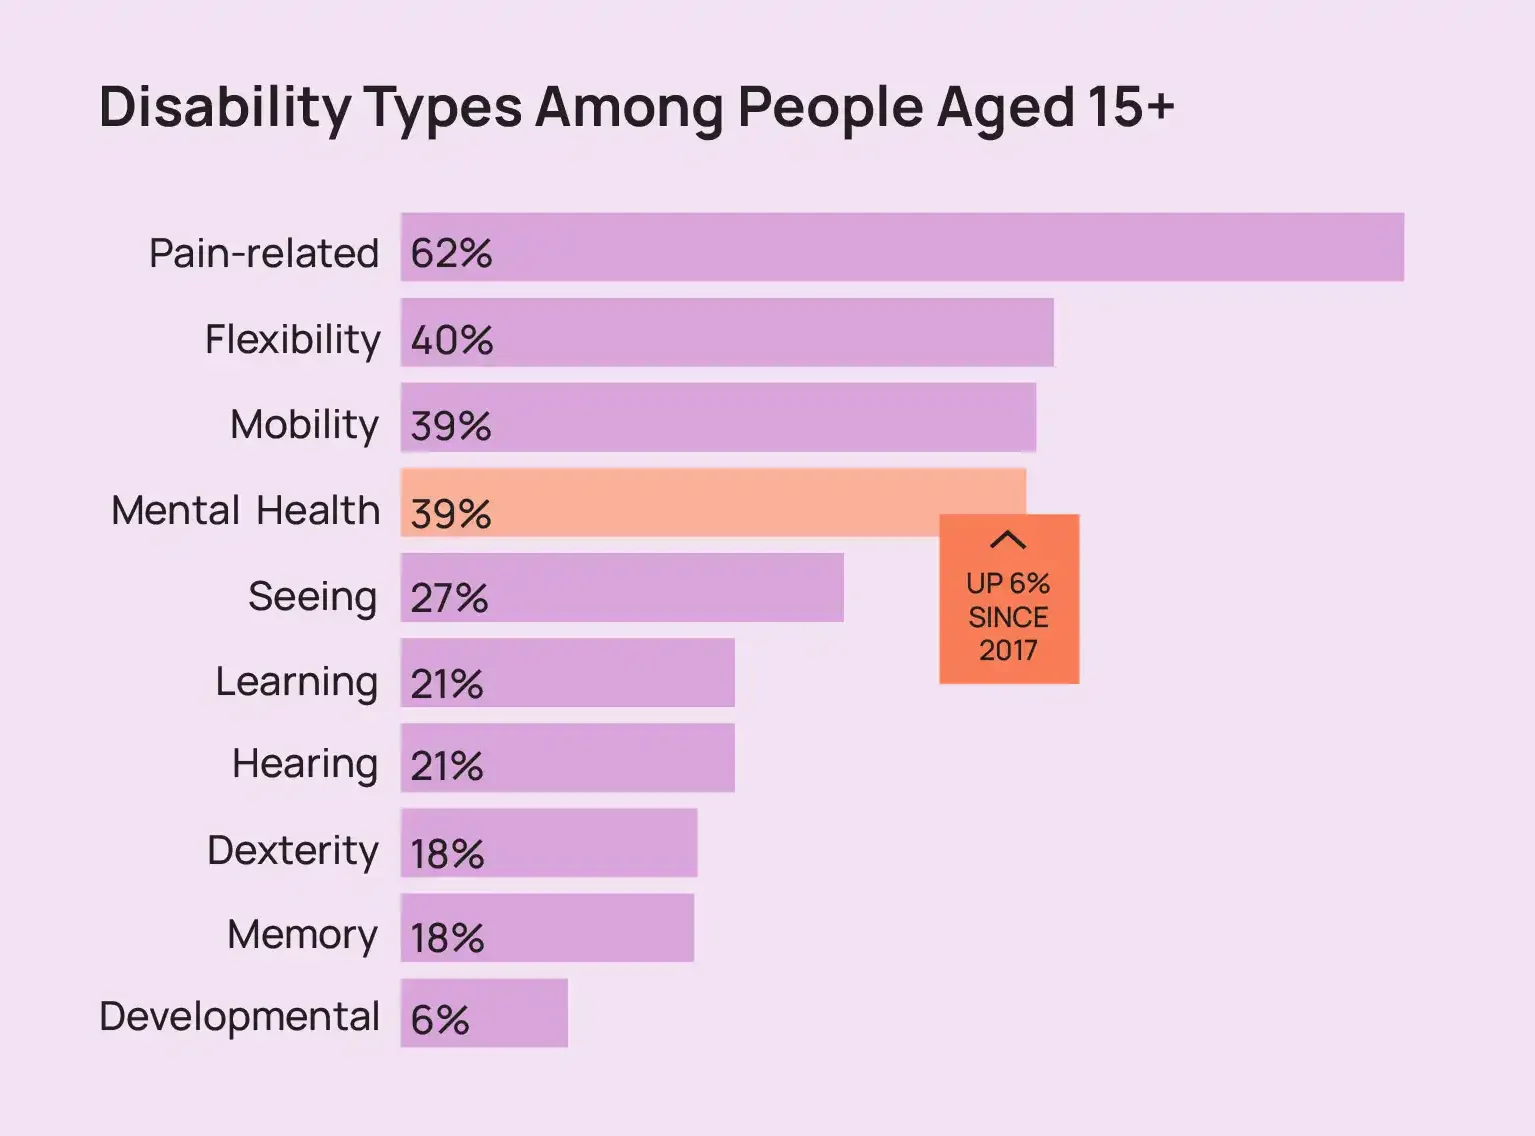 กราฟแสดงประเภทความพิการของผู้ที่มีอายุ 15 ปีขึ้นไป